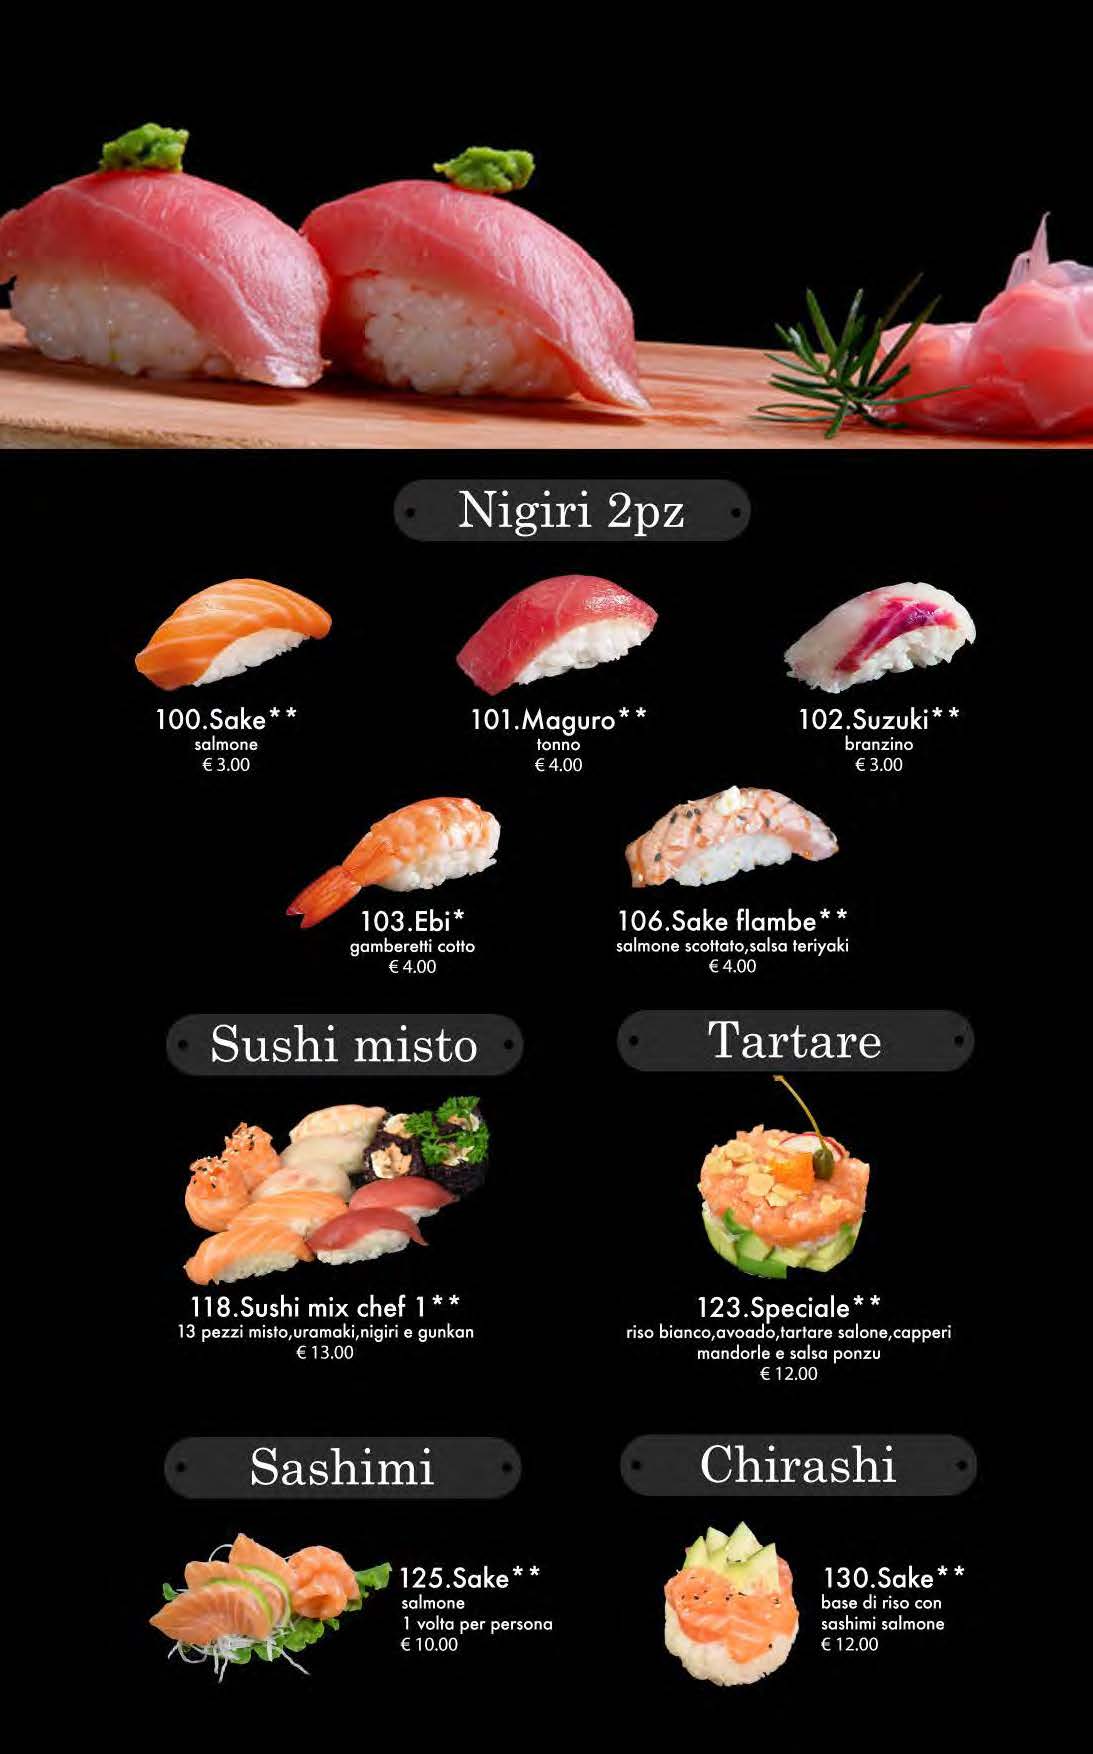 attimi ristorante giapponese padova menù pranzo pagina 07 nigiri tartare sashimi chirashi sushi mix